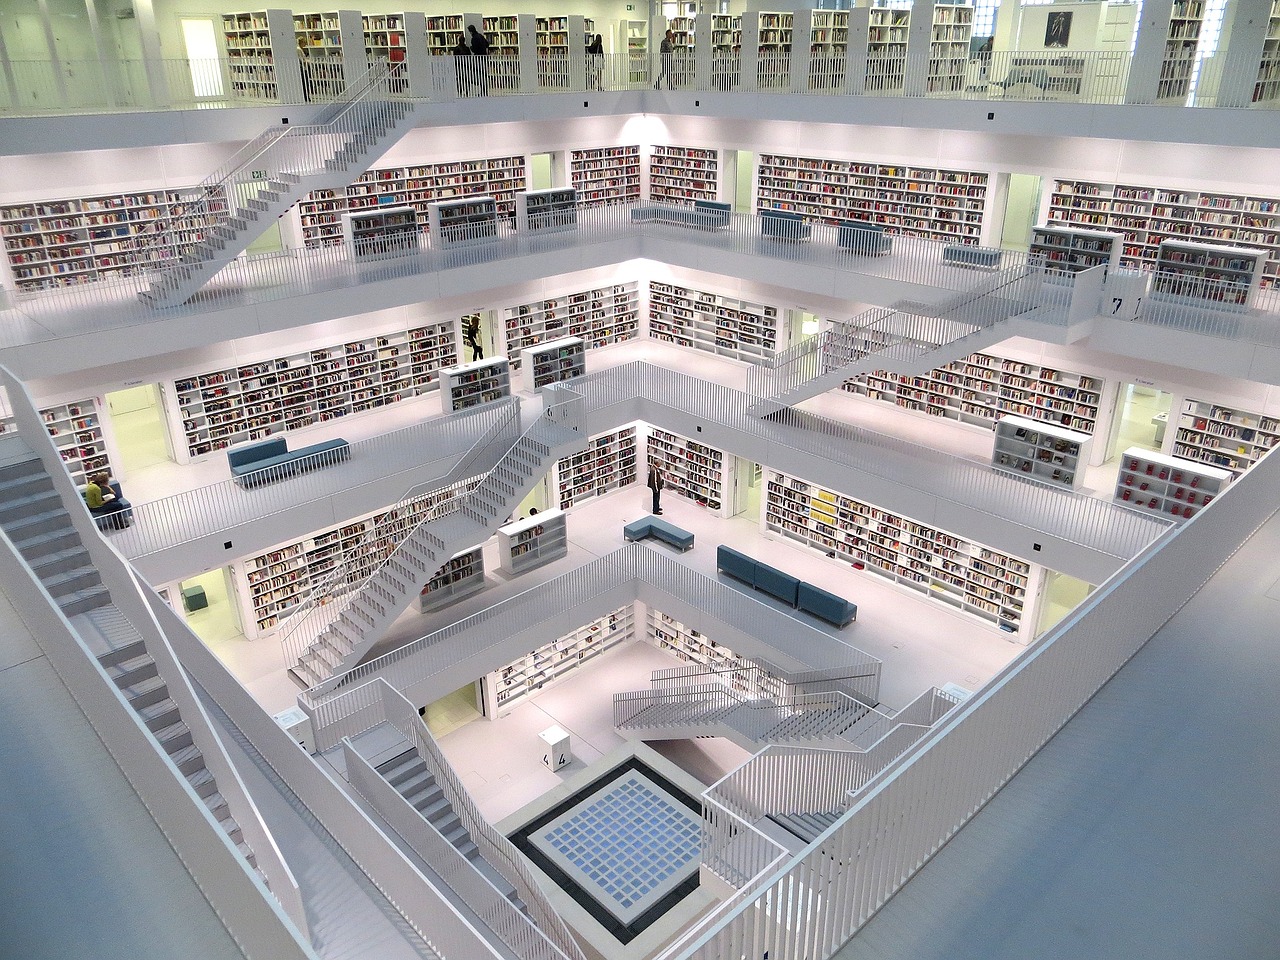 Foto de la biblioteca de Stuttgart.